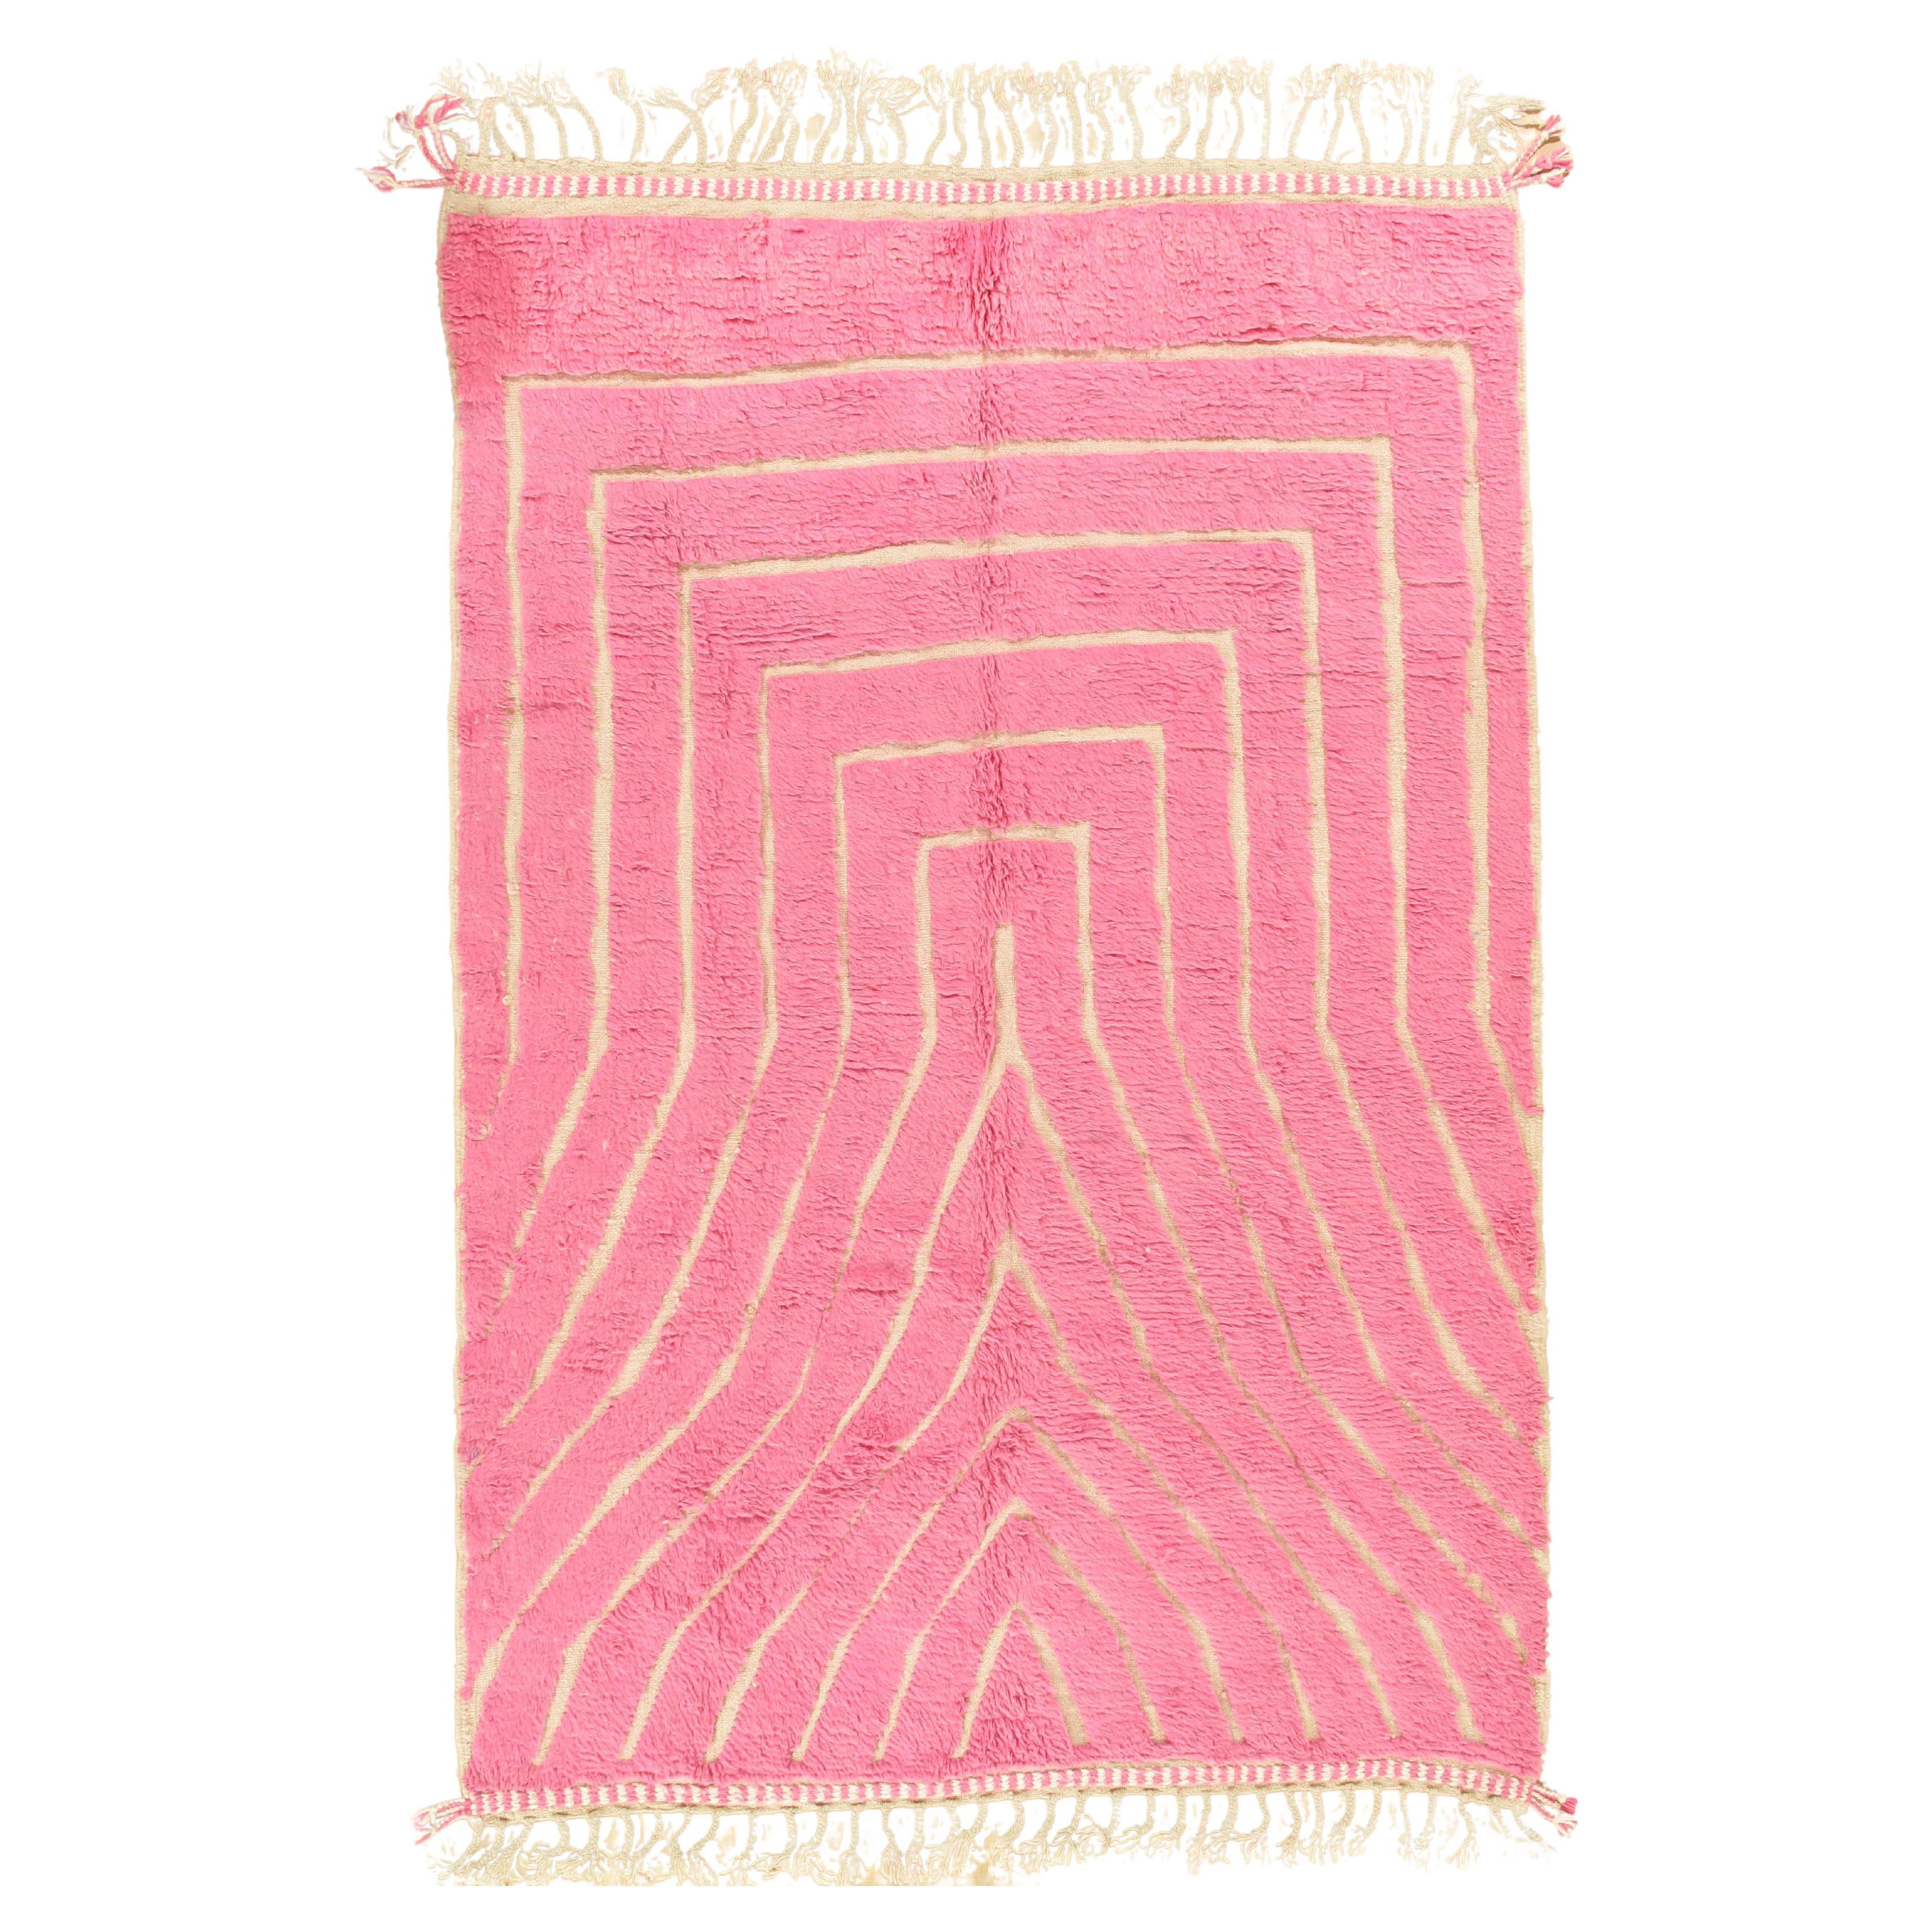 Marokkanischer Vintage-Teppich von Berber Tribes of Morocco, rosa Wolle und cremefarben